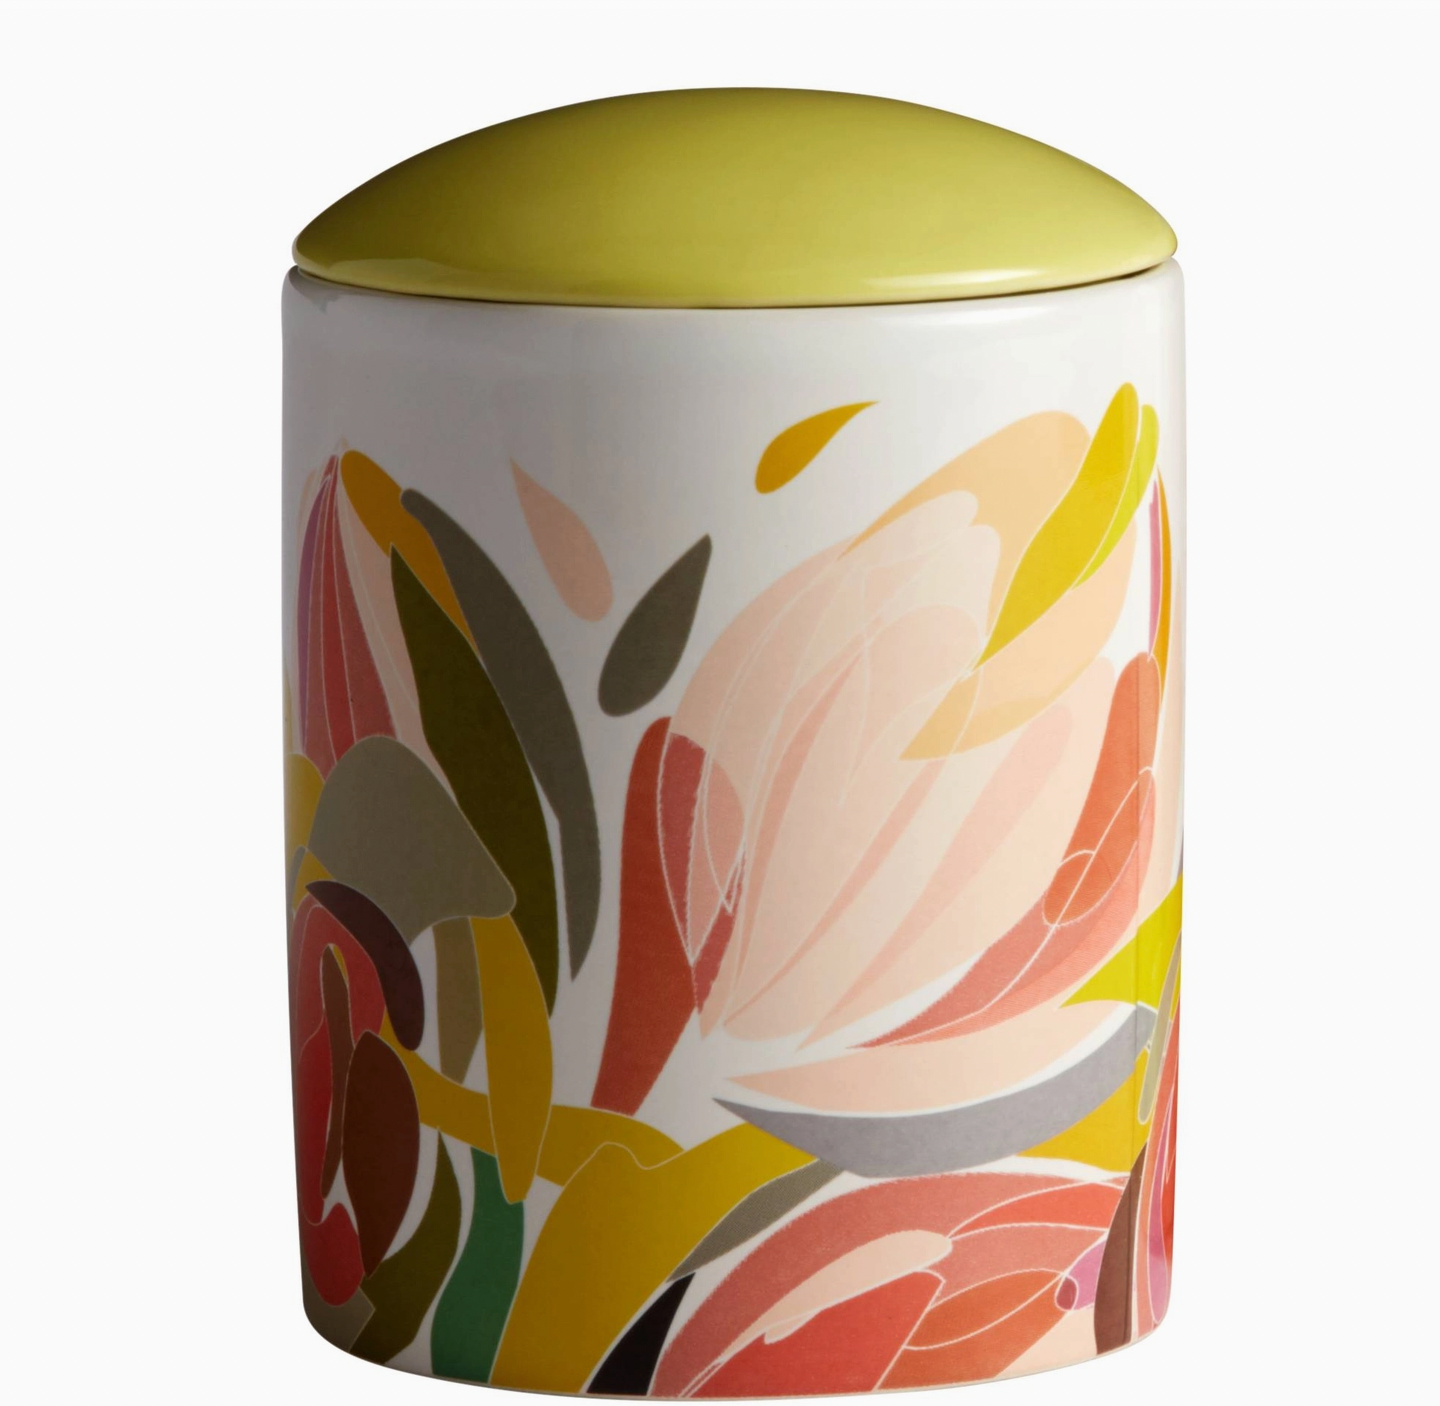 Maia Medium Ceramic Jar Candle